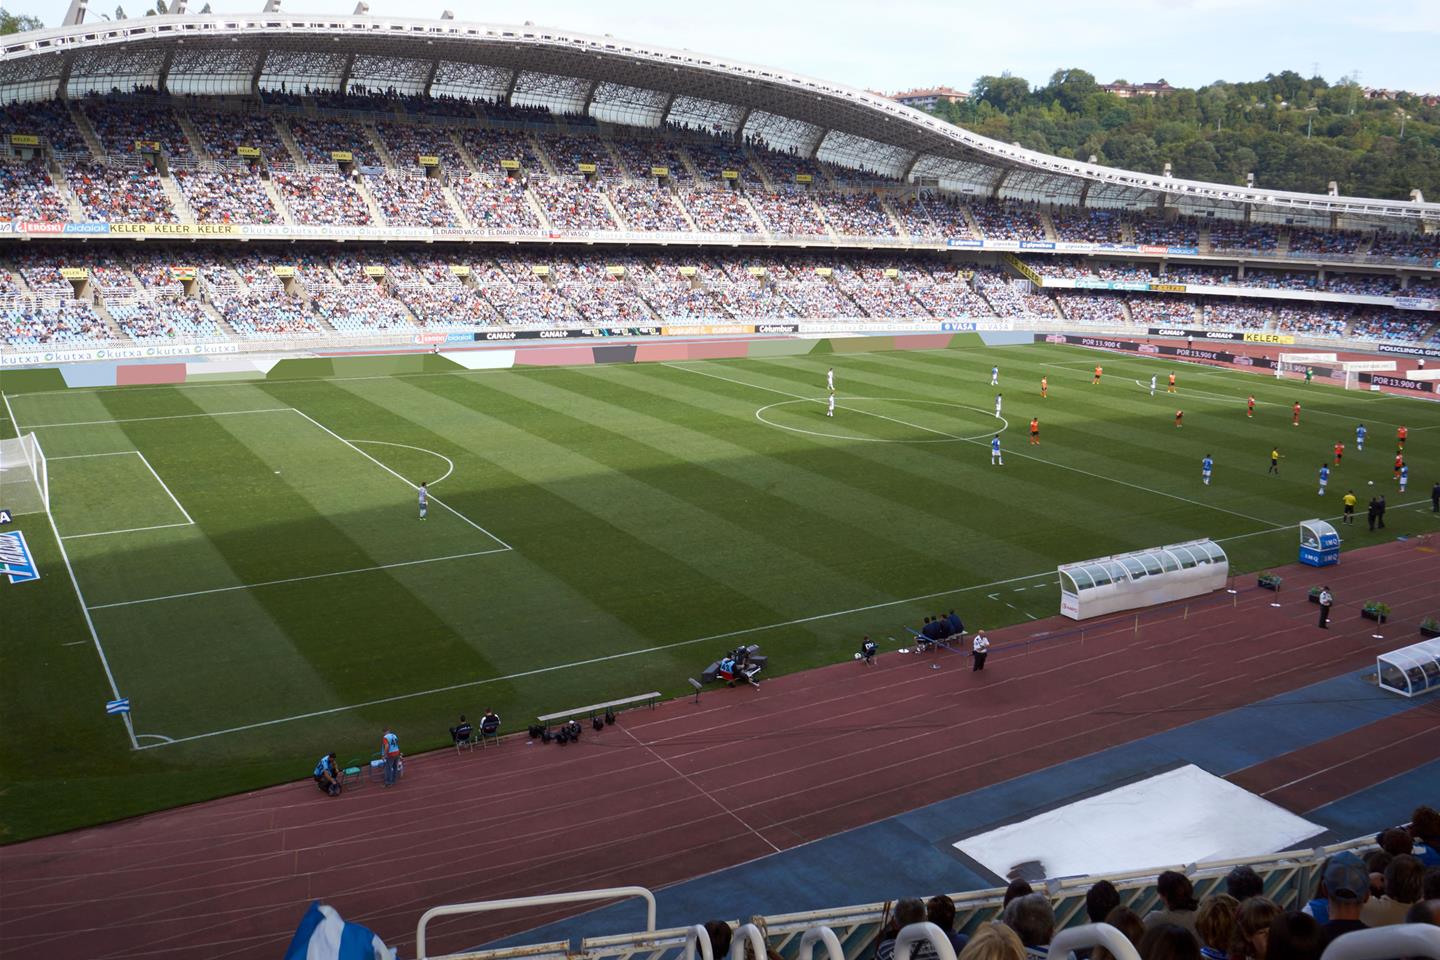 Real Sociedad Tickets | Buy or Sell Tickets for Real Sociedad 2020 Fixtures - viagogo